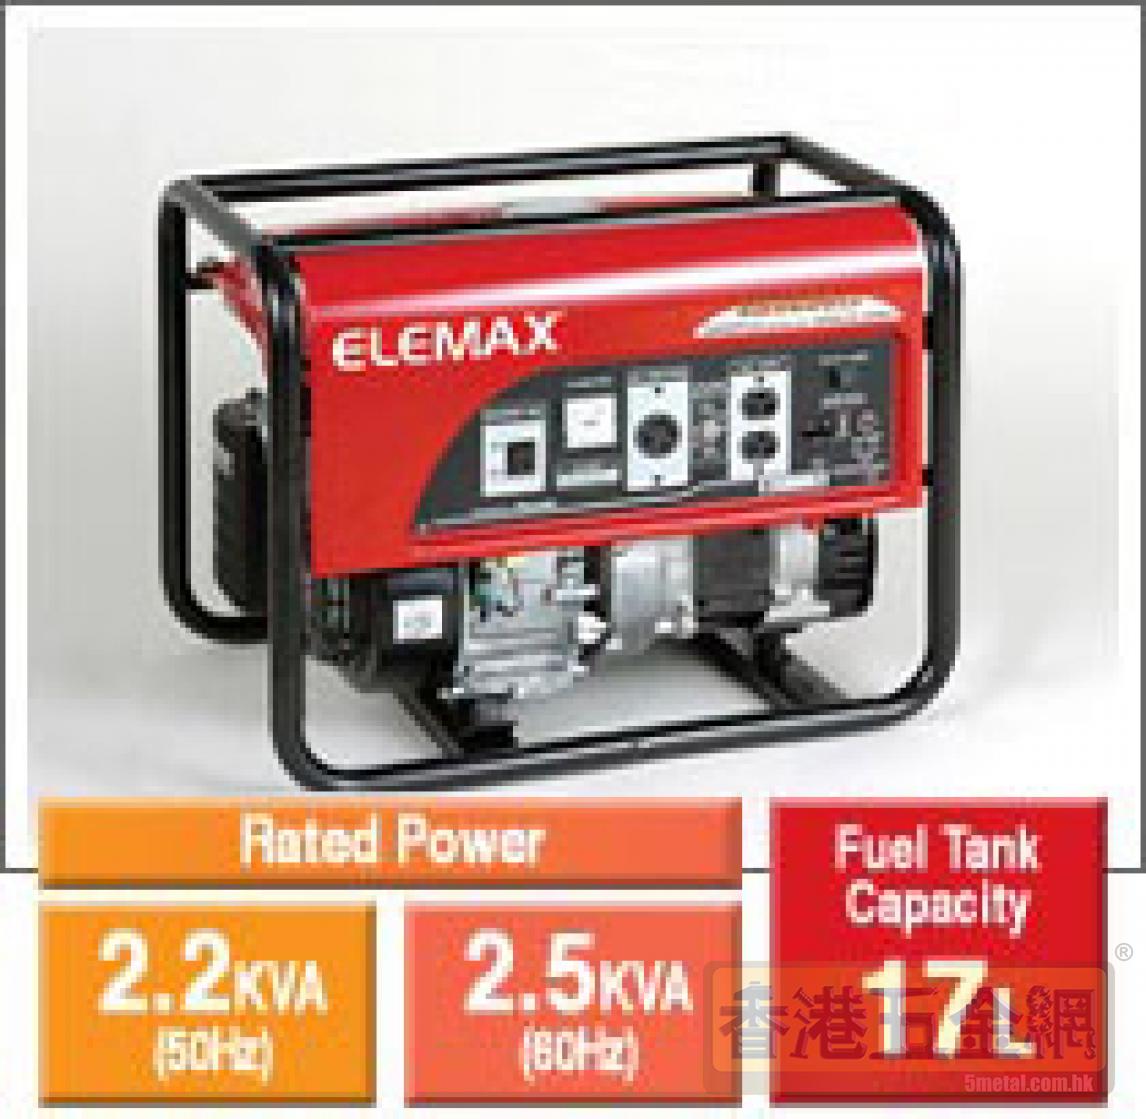 日本 澤藤電機株式會社 曰本ELEMAX發電機 汽油發電機 柴油發電機